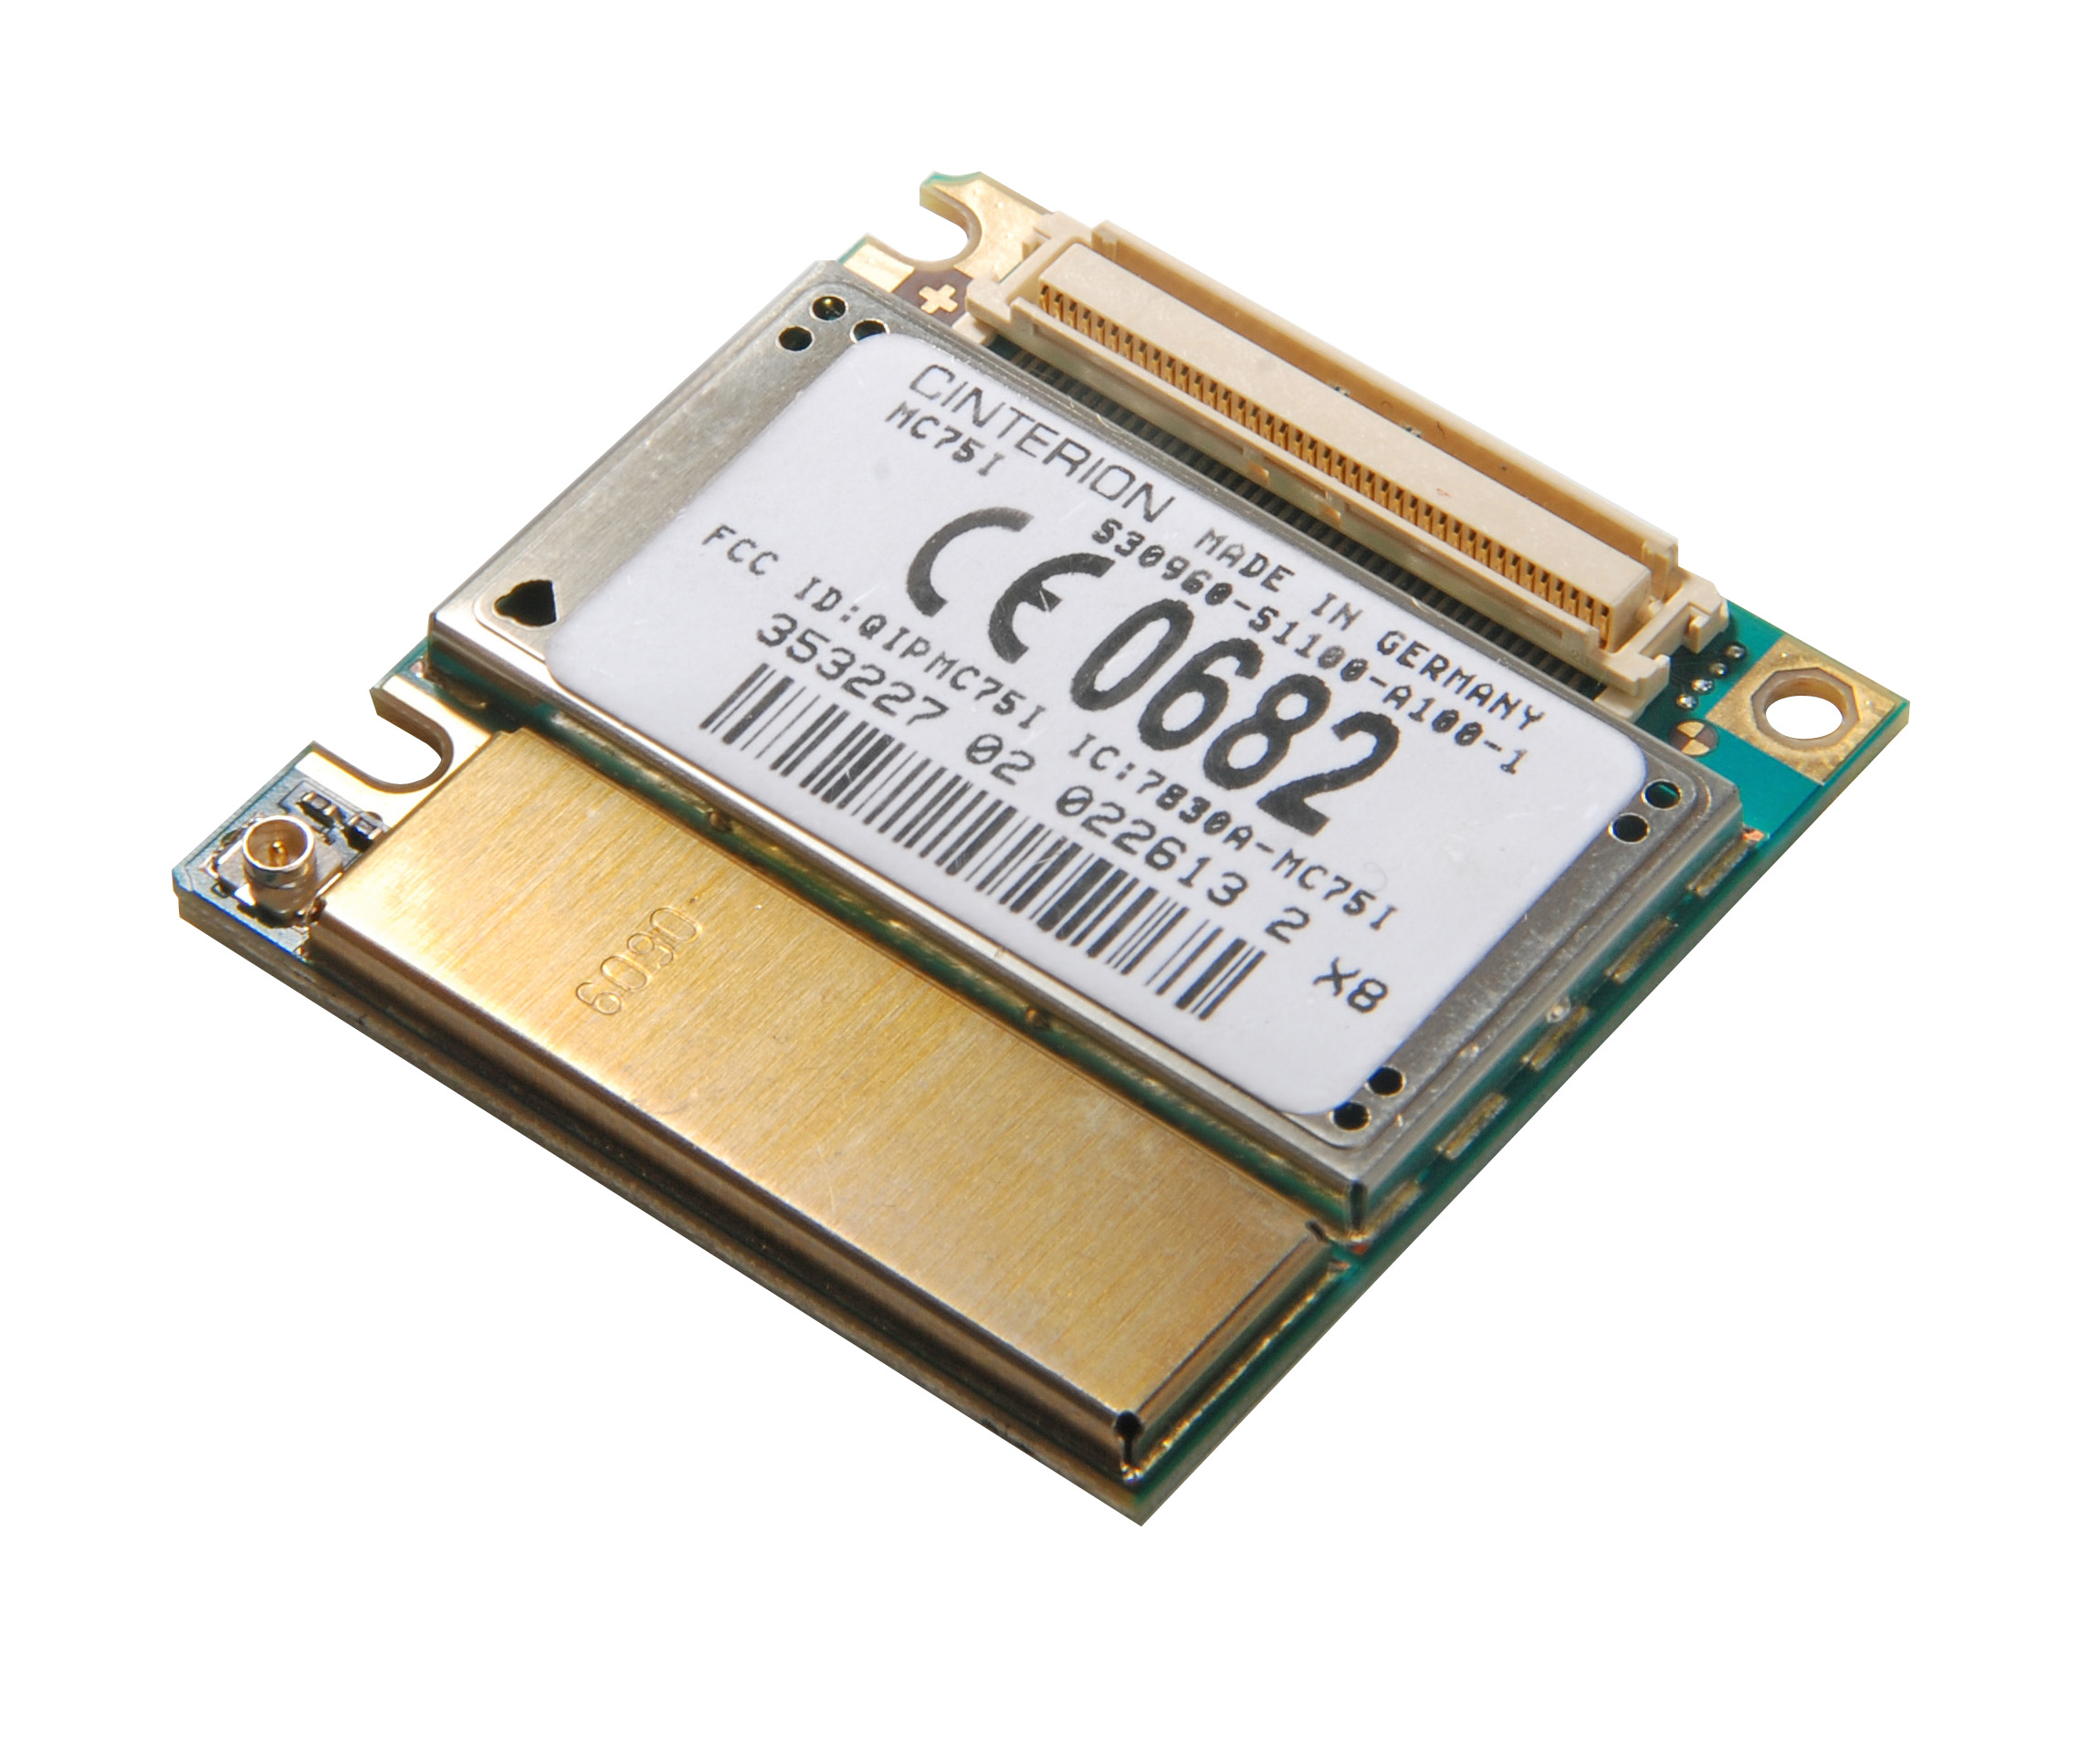 MC75i (GSM/EDGE модуль) от Cinterion купить в ЕвроМобайл